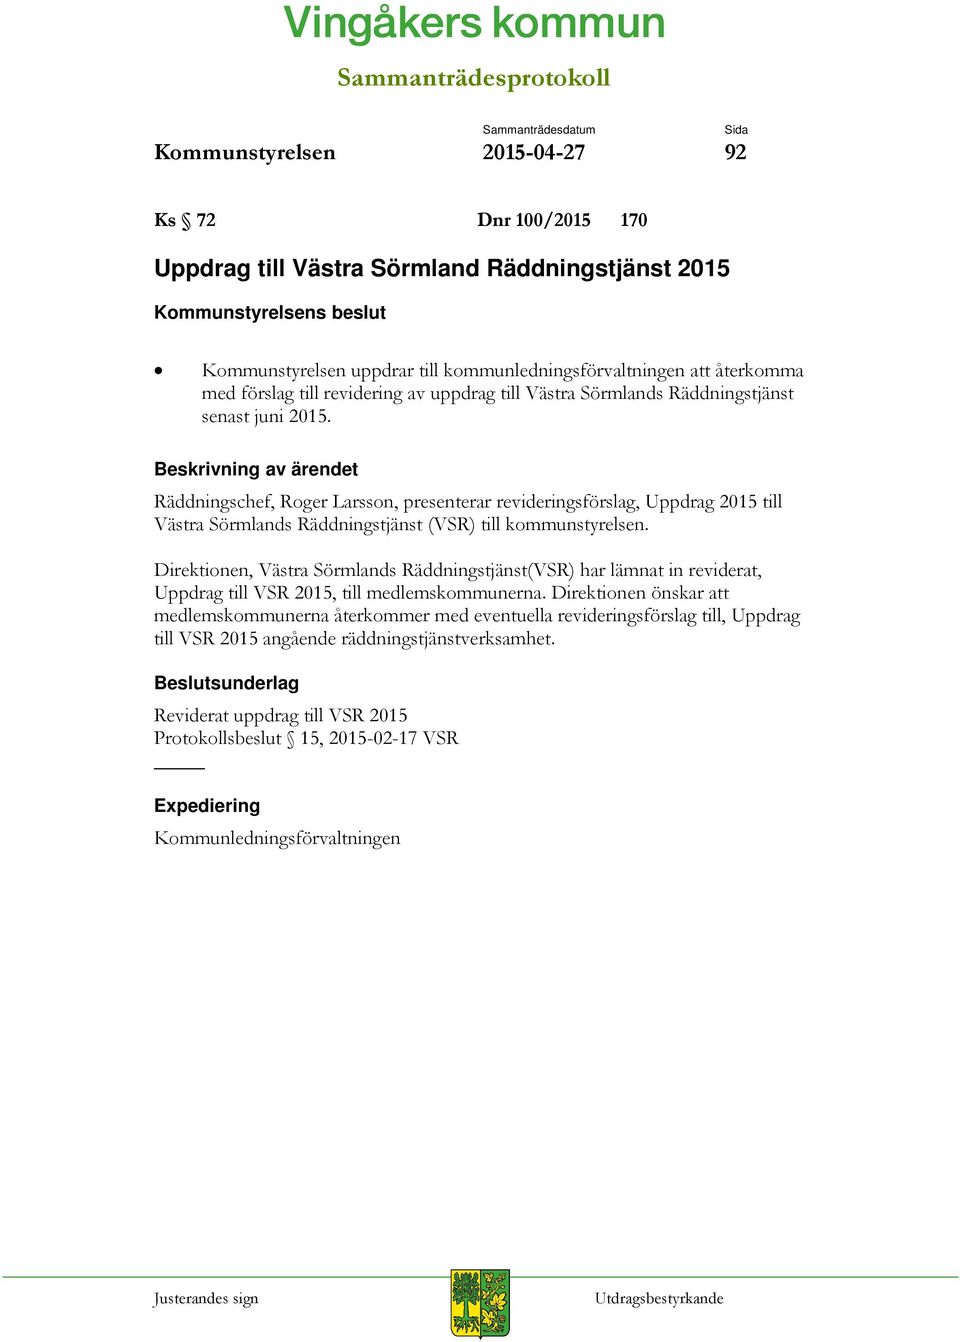 Räddningschef, Roger Larsson, presenterar revideringsförslag, Uppdrag 2015 till Västra Sörmlands Räddningstjänst (VSR) till kommunstyrelsen.